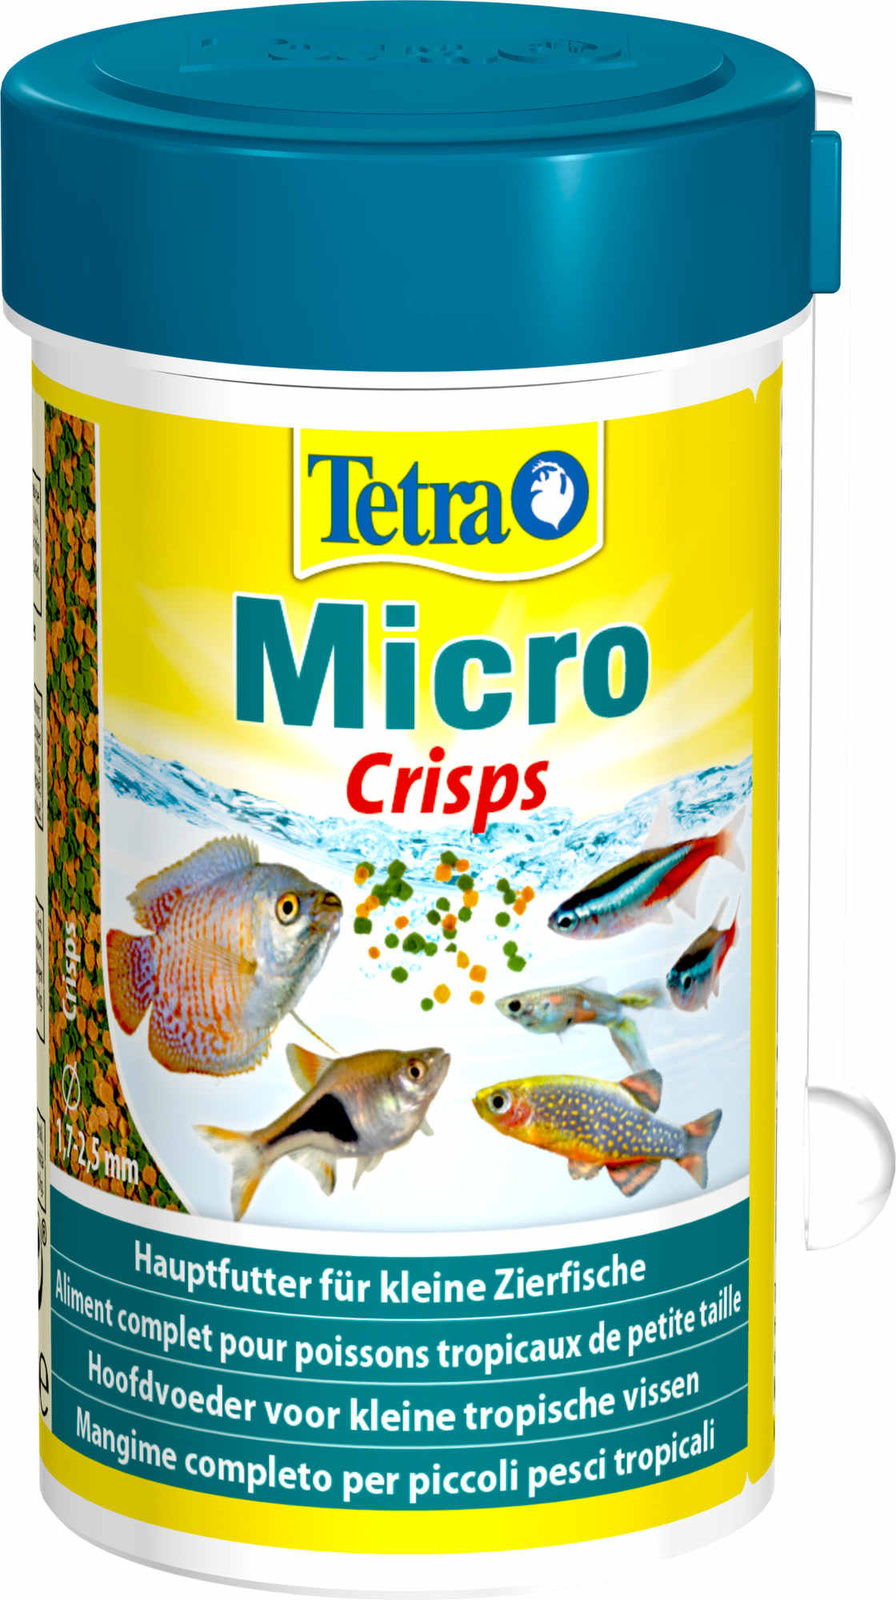 Tetra (корма) Tetra (корма) корм для для всех видов мелких рыб, микрочипсы (39 г) tetra корма tetra корма корм для всех видов мелких рыб микрогранулы 45 г